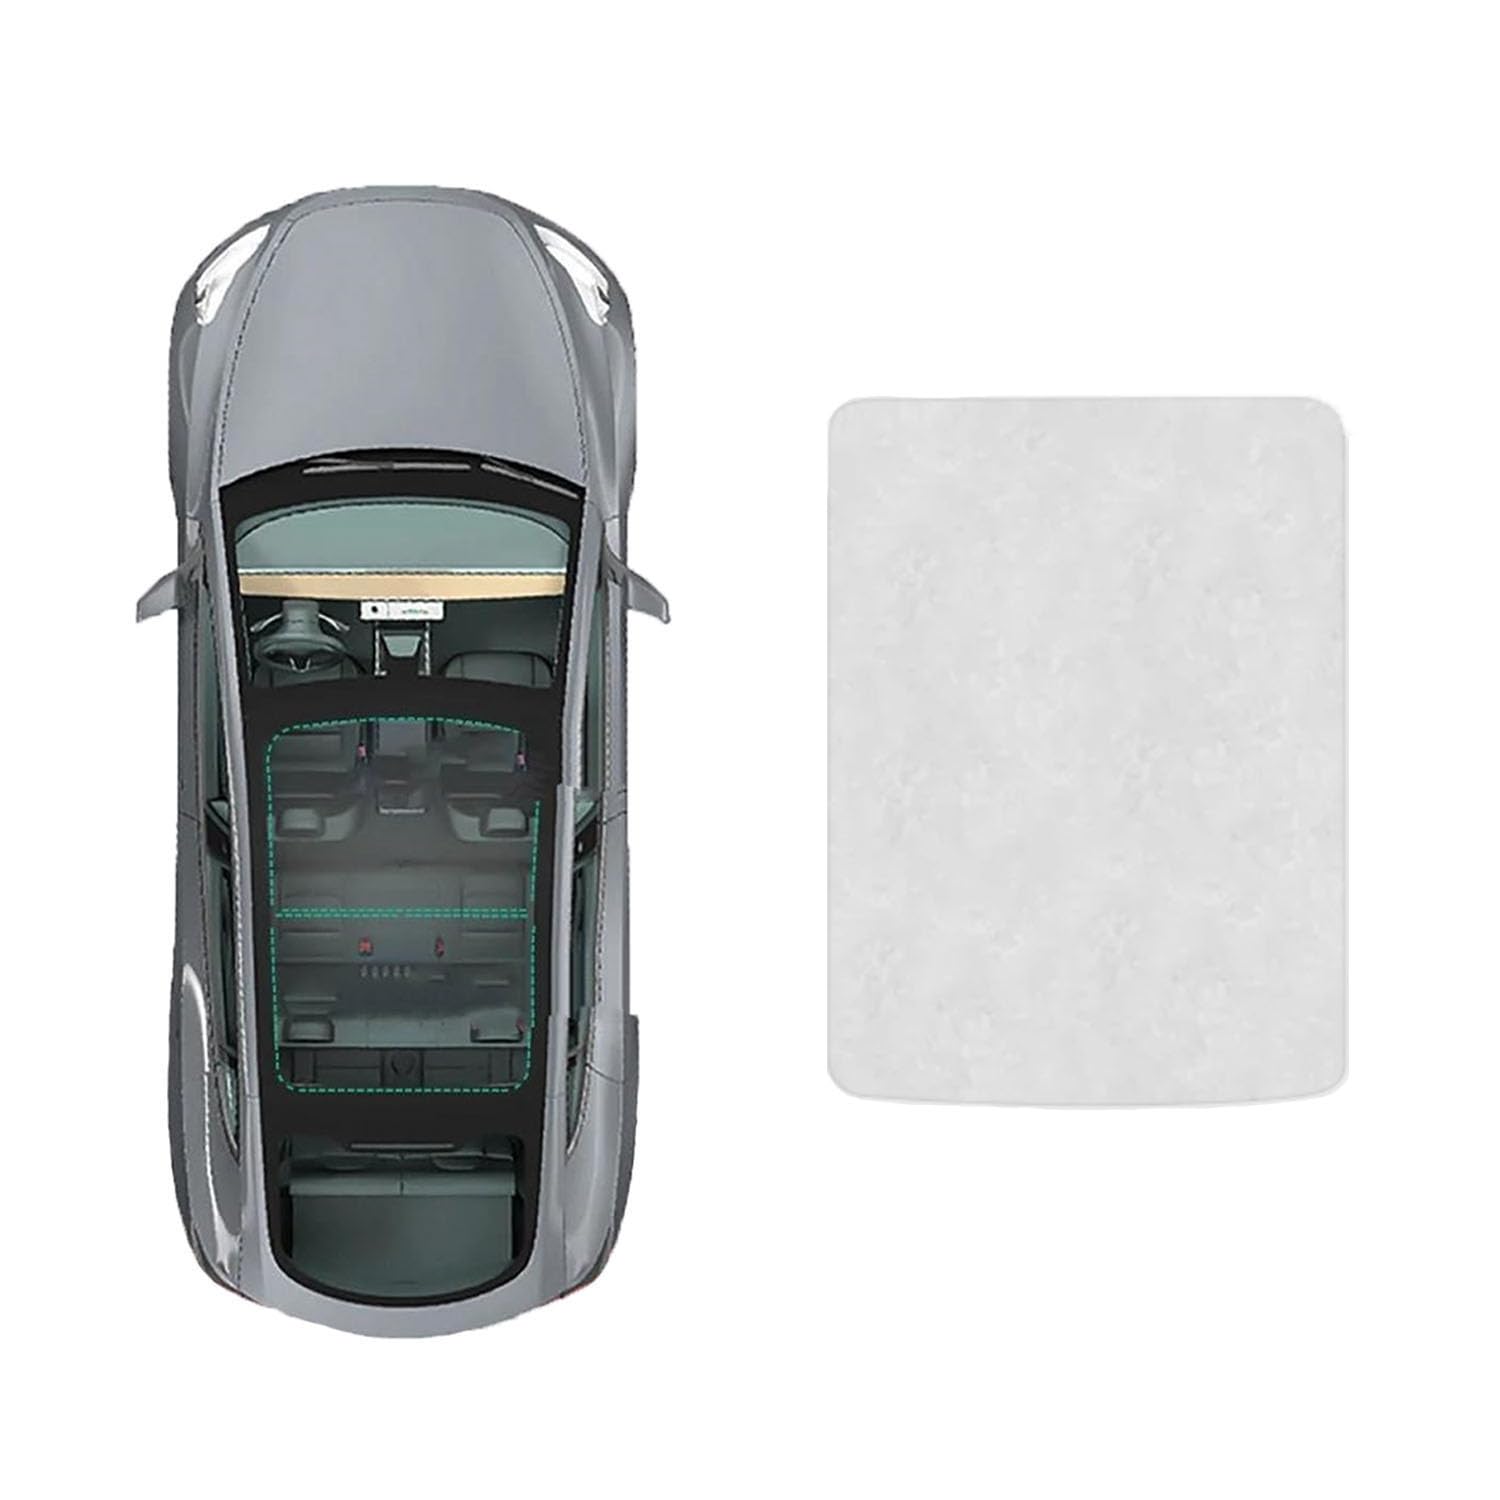 Auto-Schiebedach-Beschattung Für VW CC 2016-,Auto Schiebedach Sonnenschutz Dachfenster Dach Wärme Isolierung Beschattung Innen,B-Gray white Suede von LiuROSE